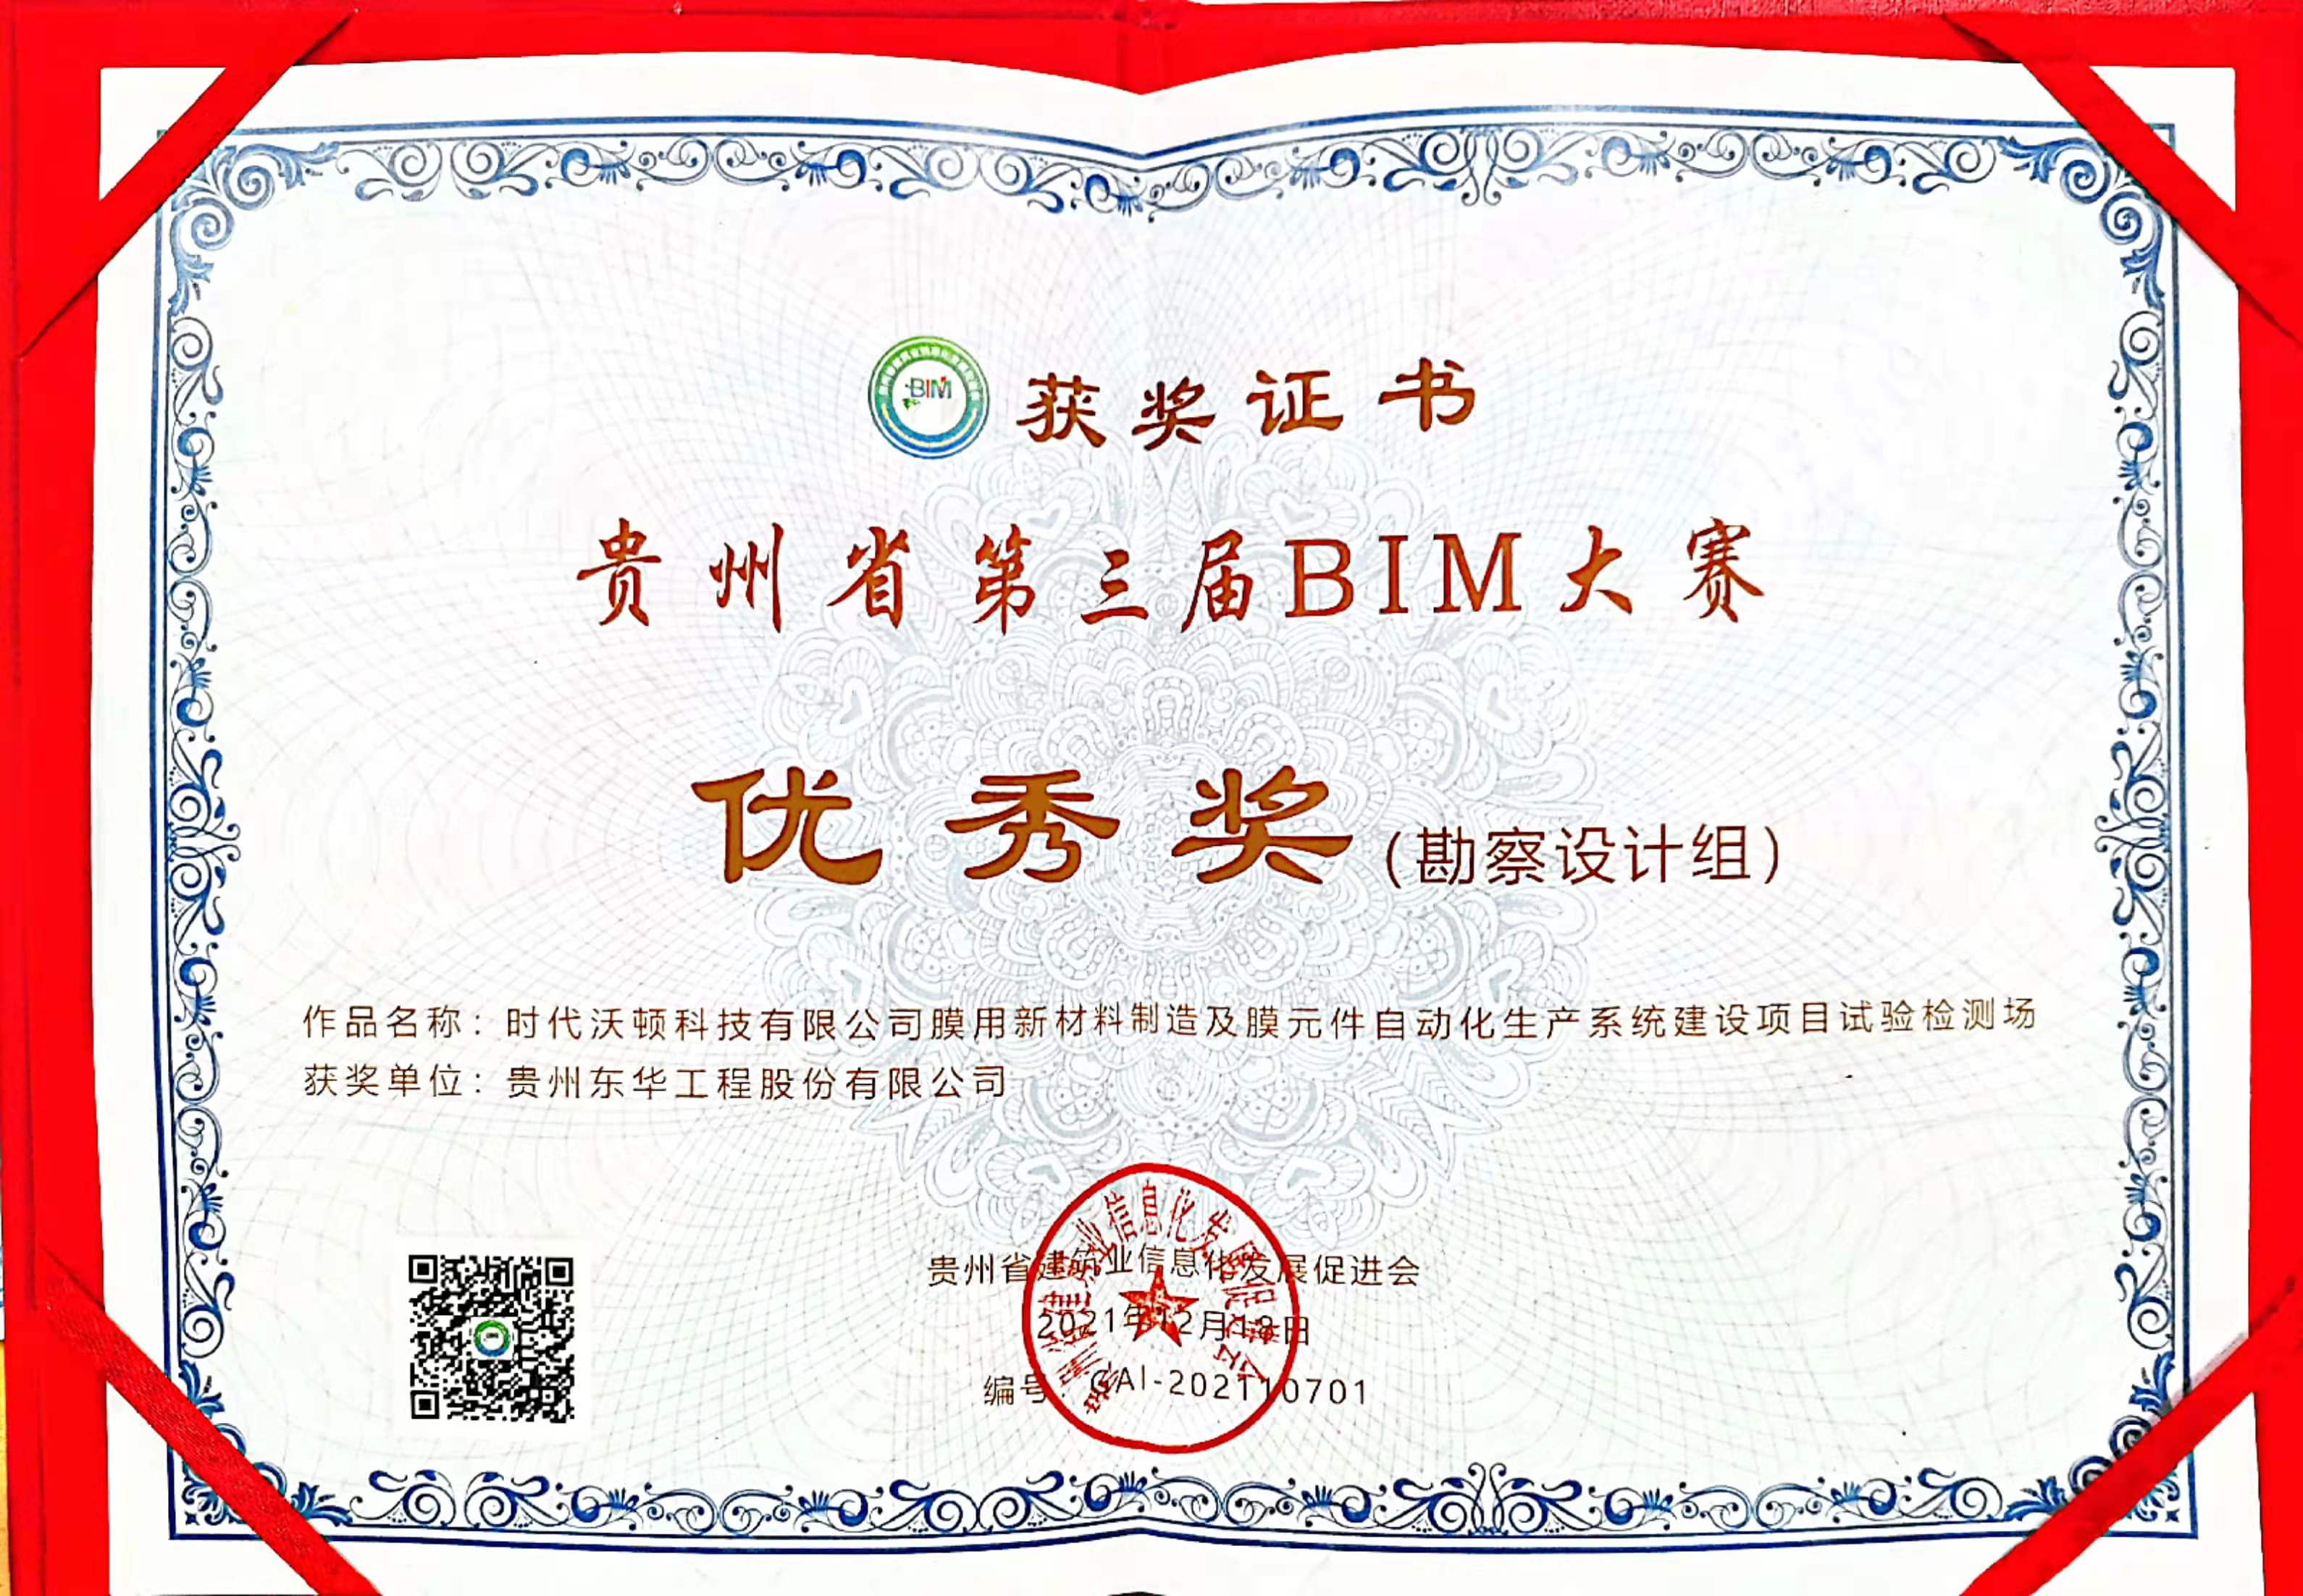 贵州东华荣获贵州省第三届BIM大赛奖项